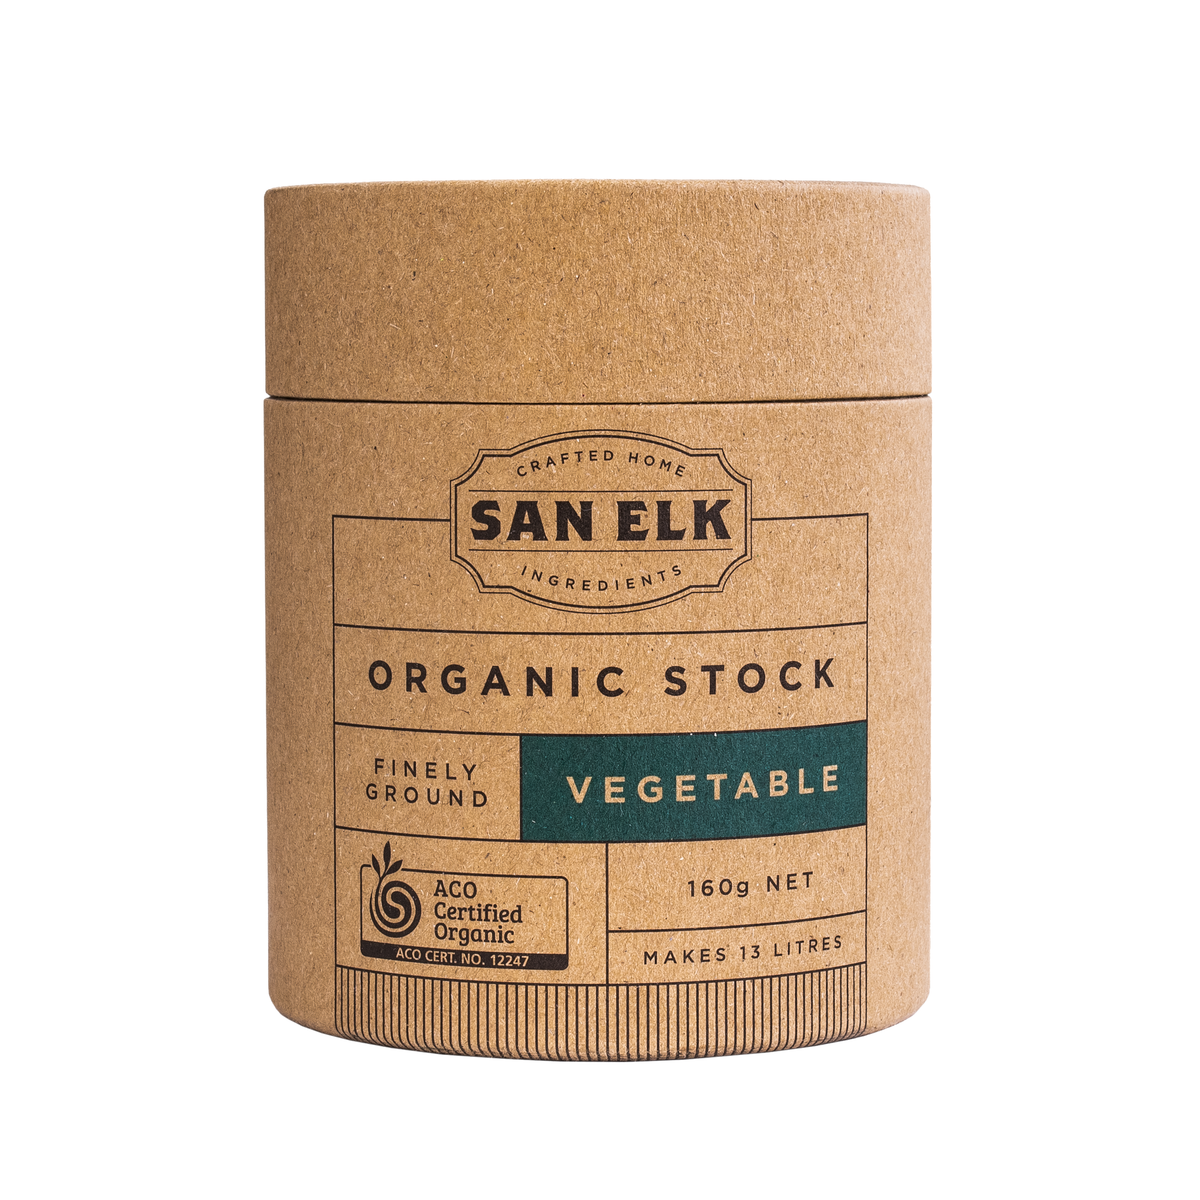 San Elk Certified Organic Vegetable Stock